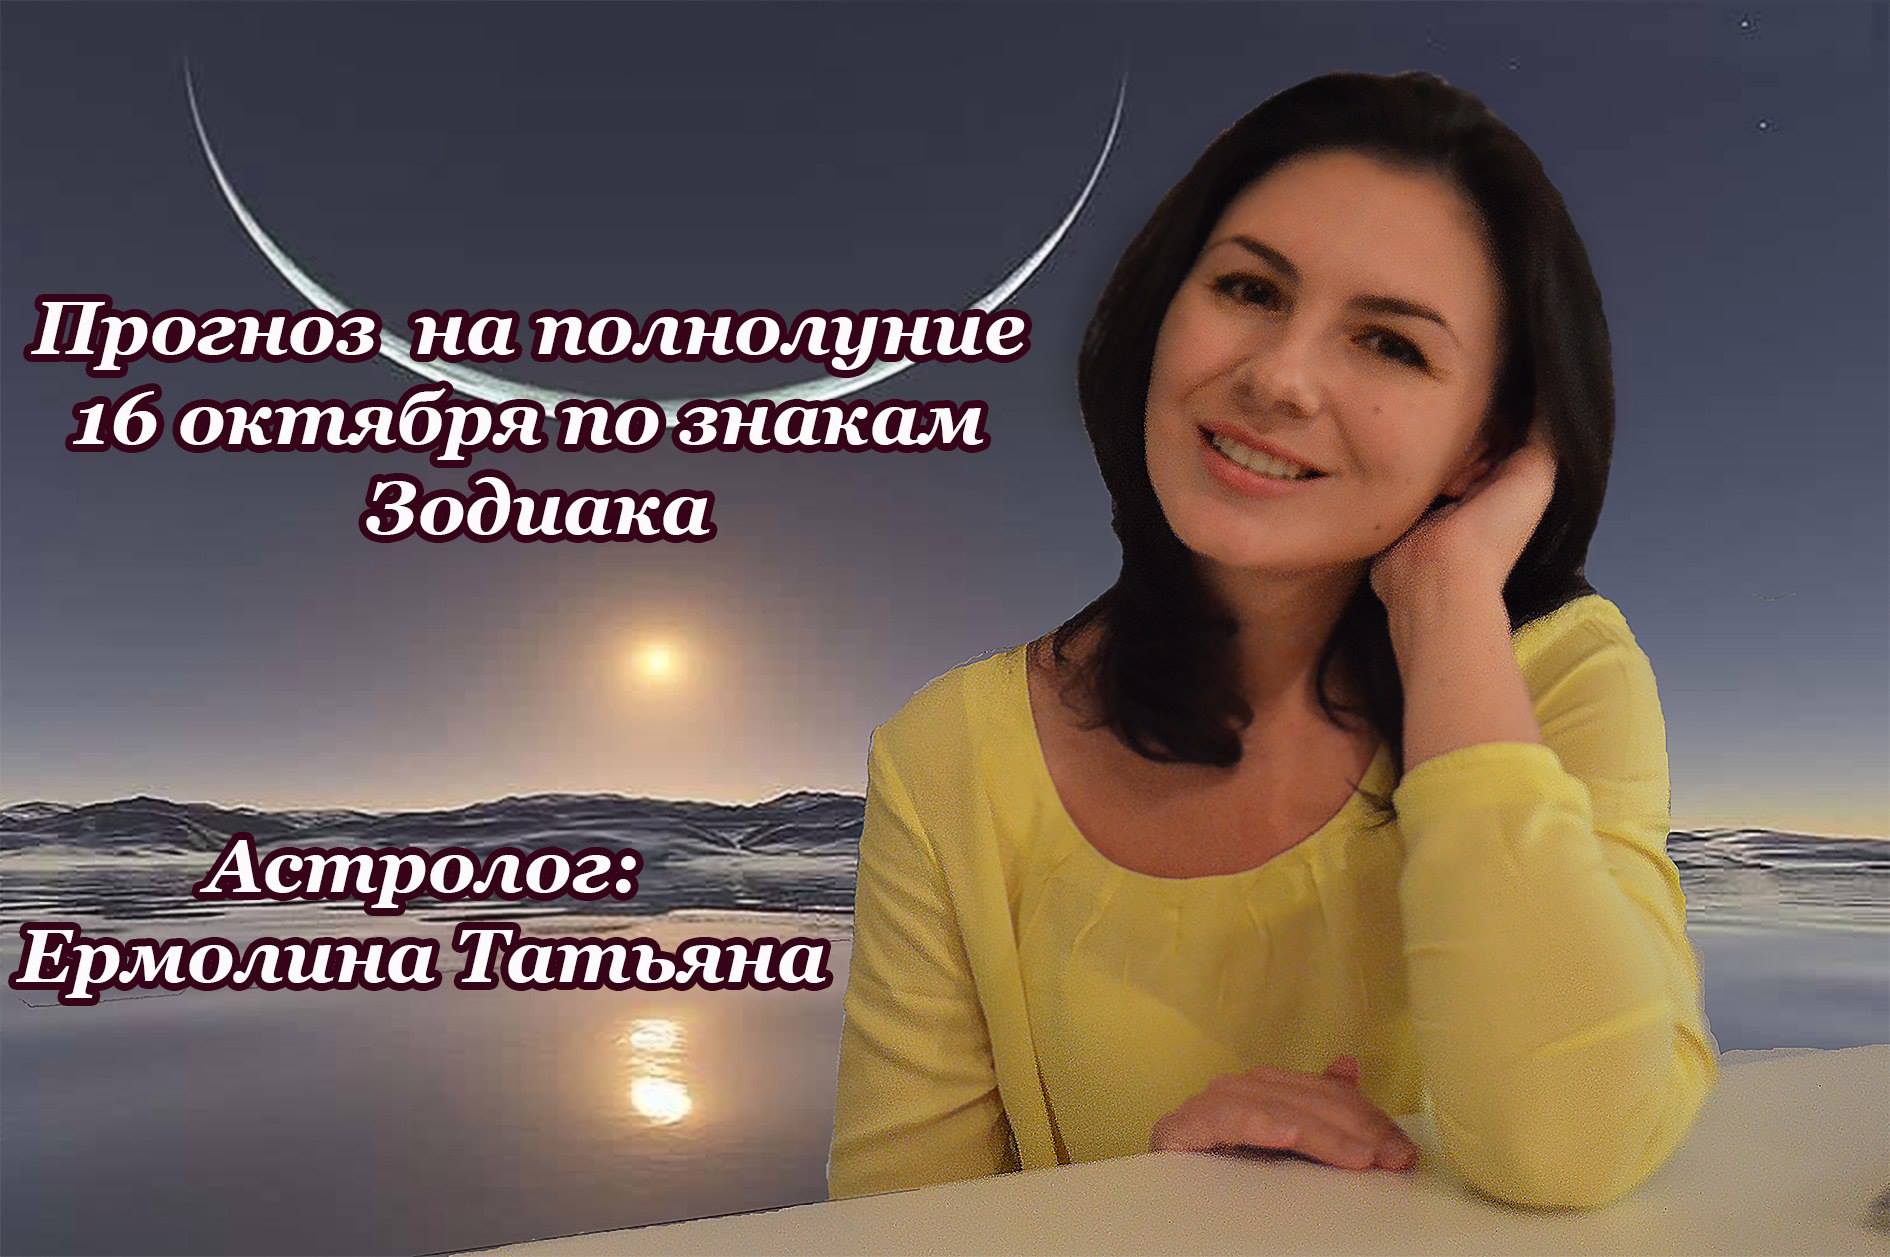 Татьяна Ермолина Астролог Фото В Купальнике